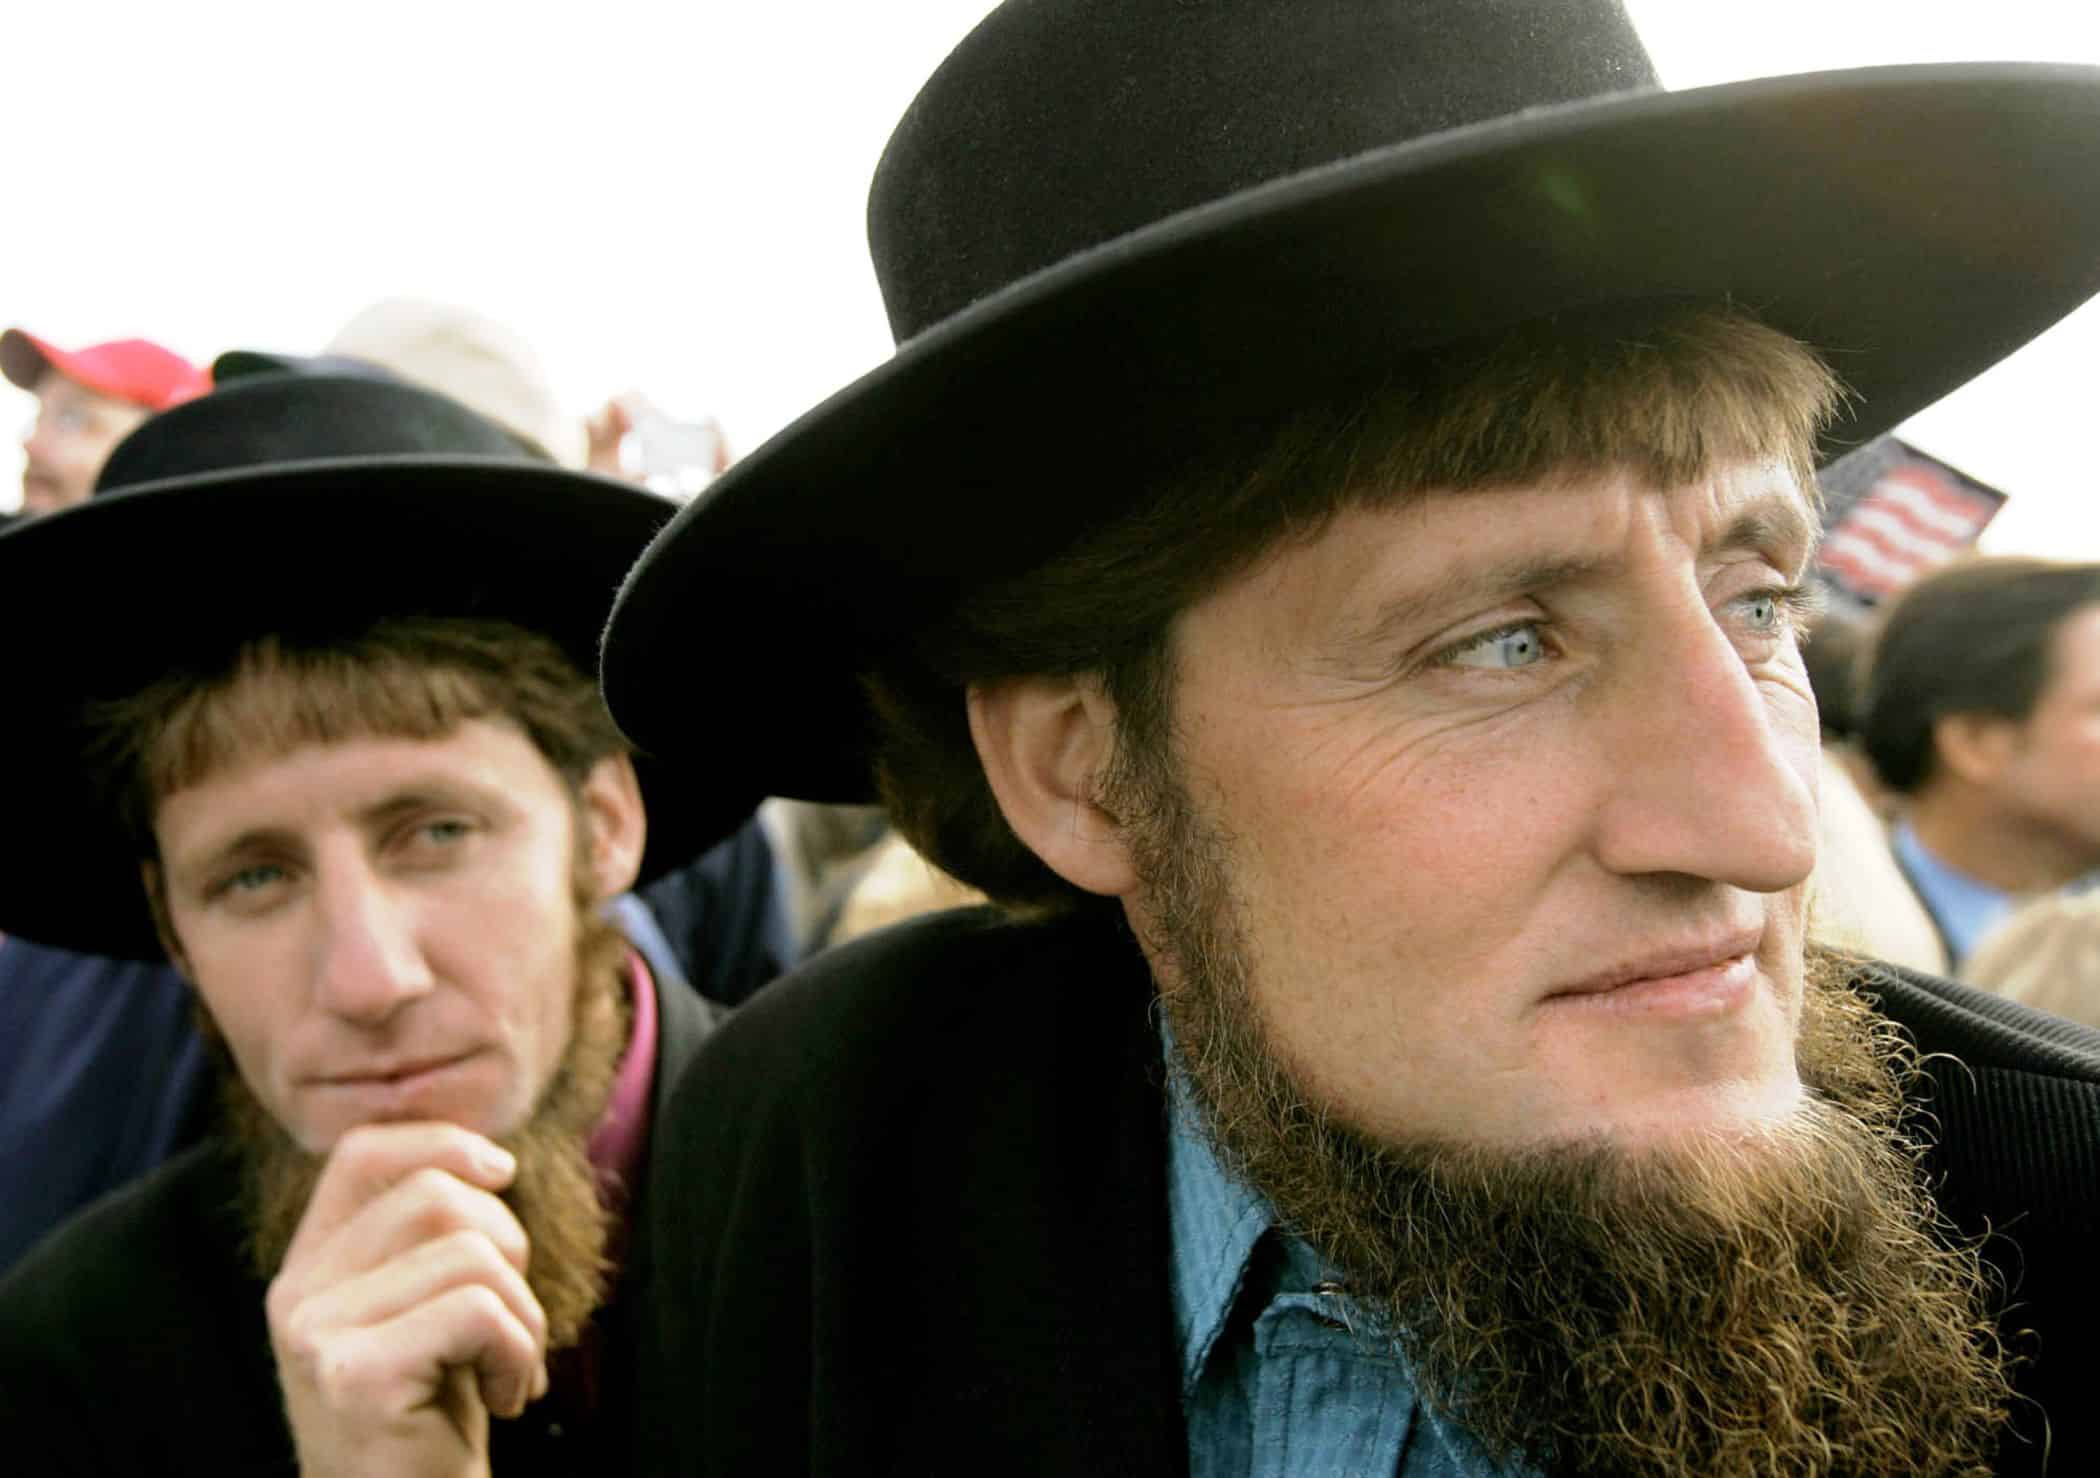  Amish: heillandi samfélag sem býr í Bandaríkjunum og Kanada